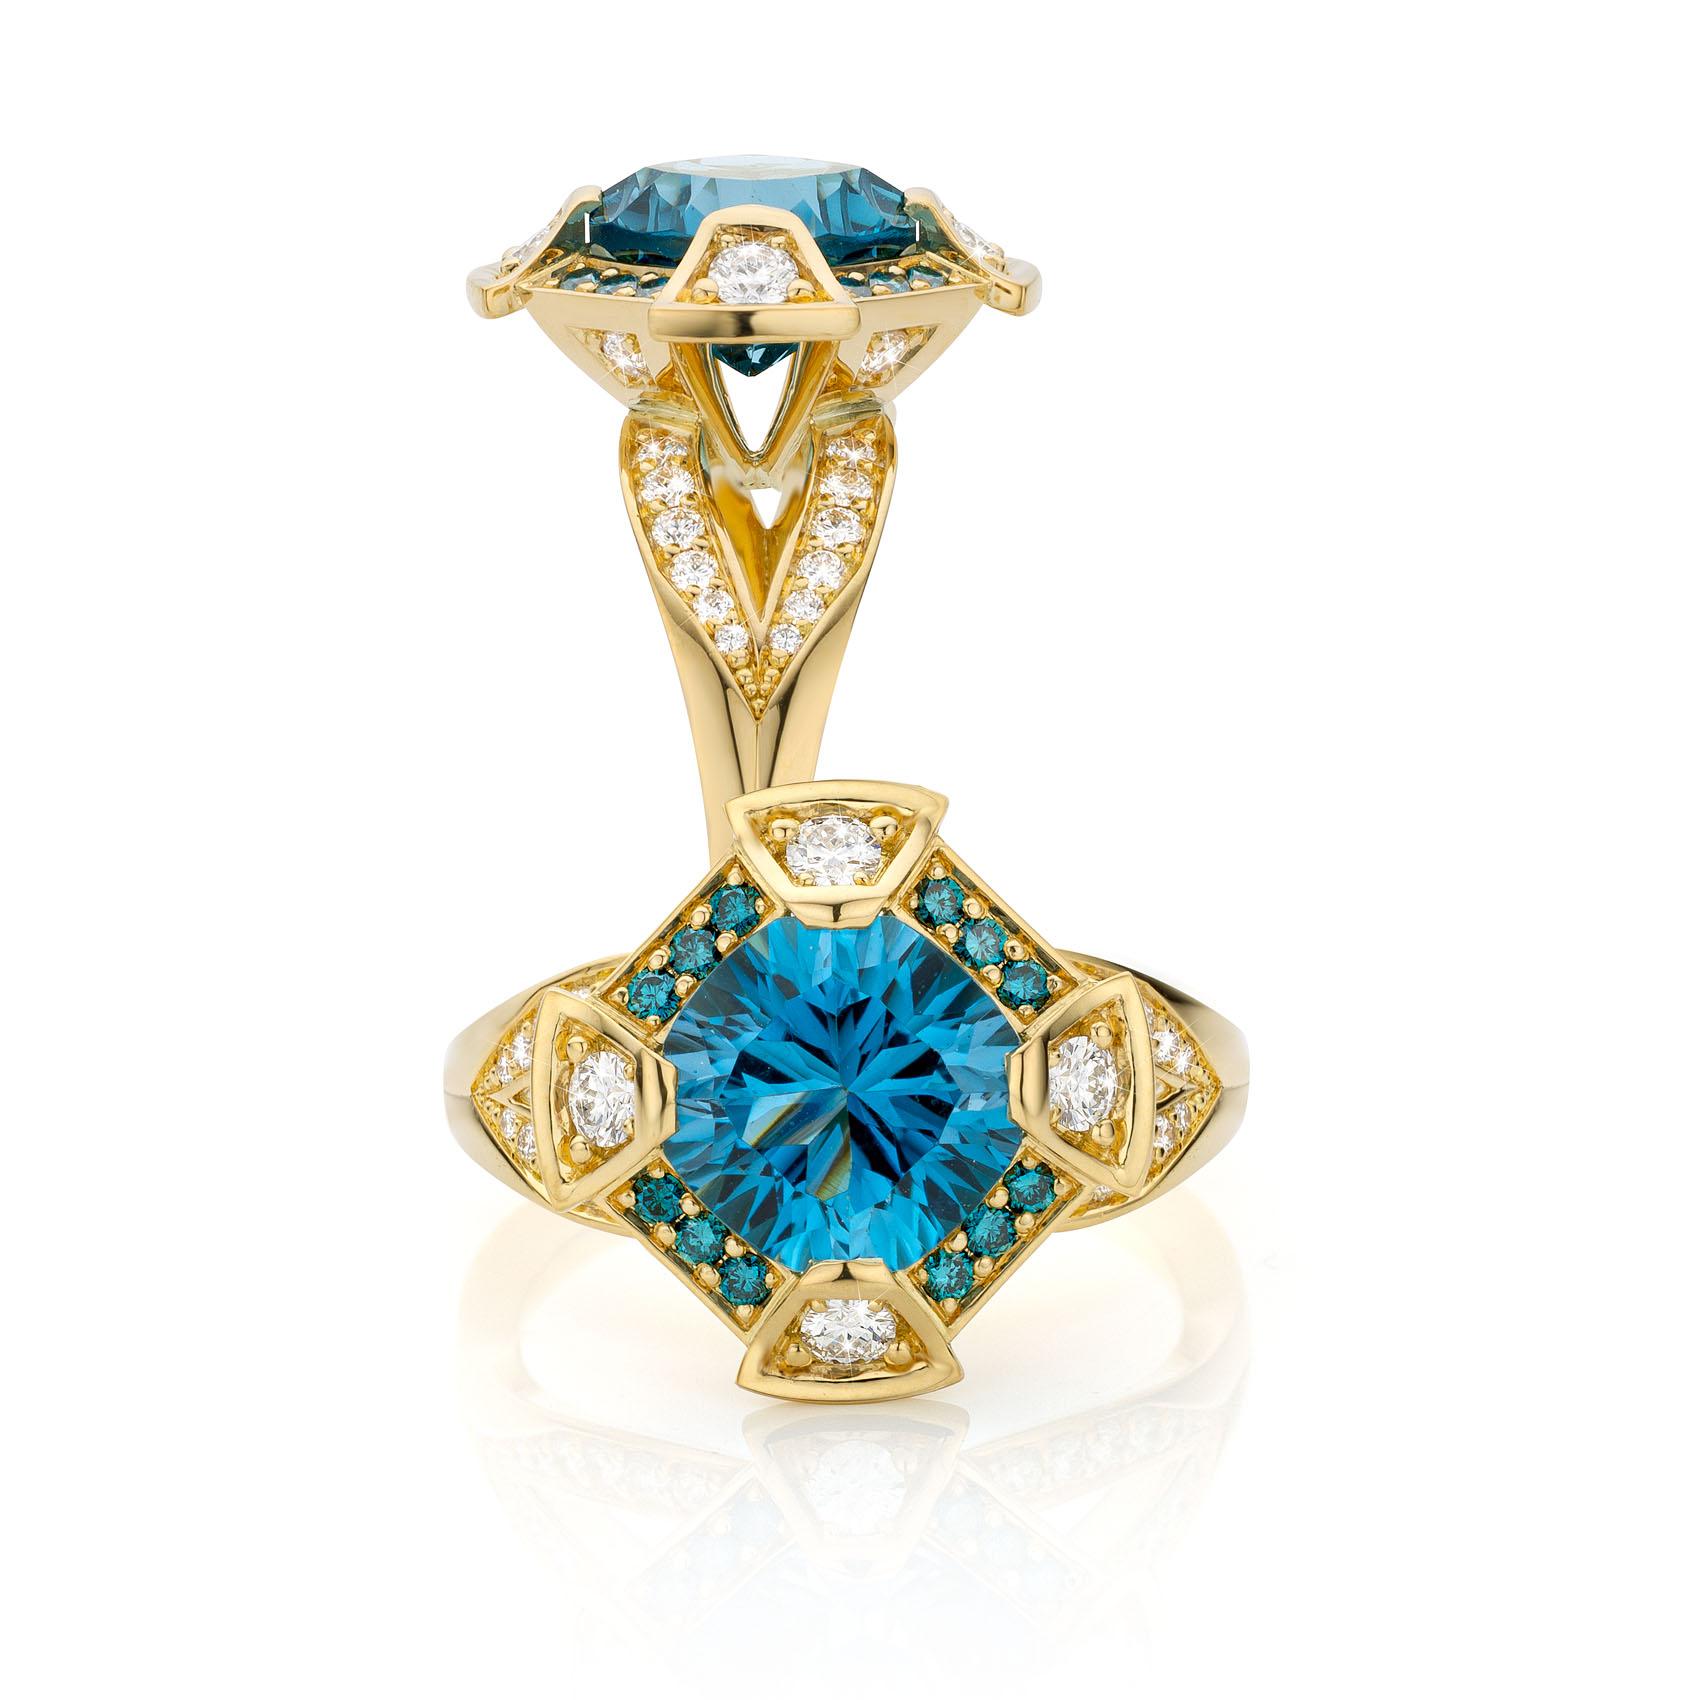 Contemporary Cober “Tropical Blue” Topaz 12 blue Diamonds 24 Pavé Diamonds Yellow Gold Ring For Sale